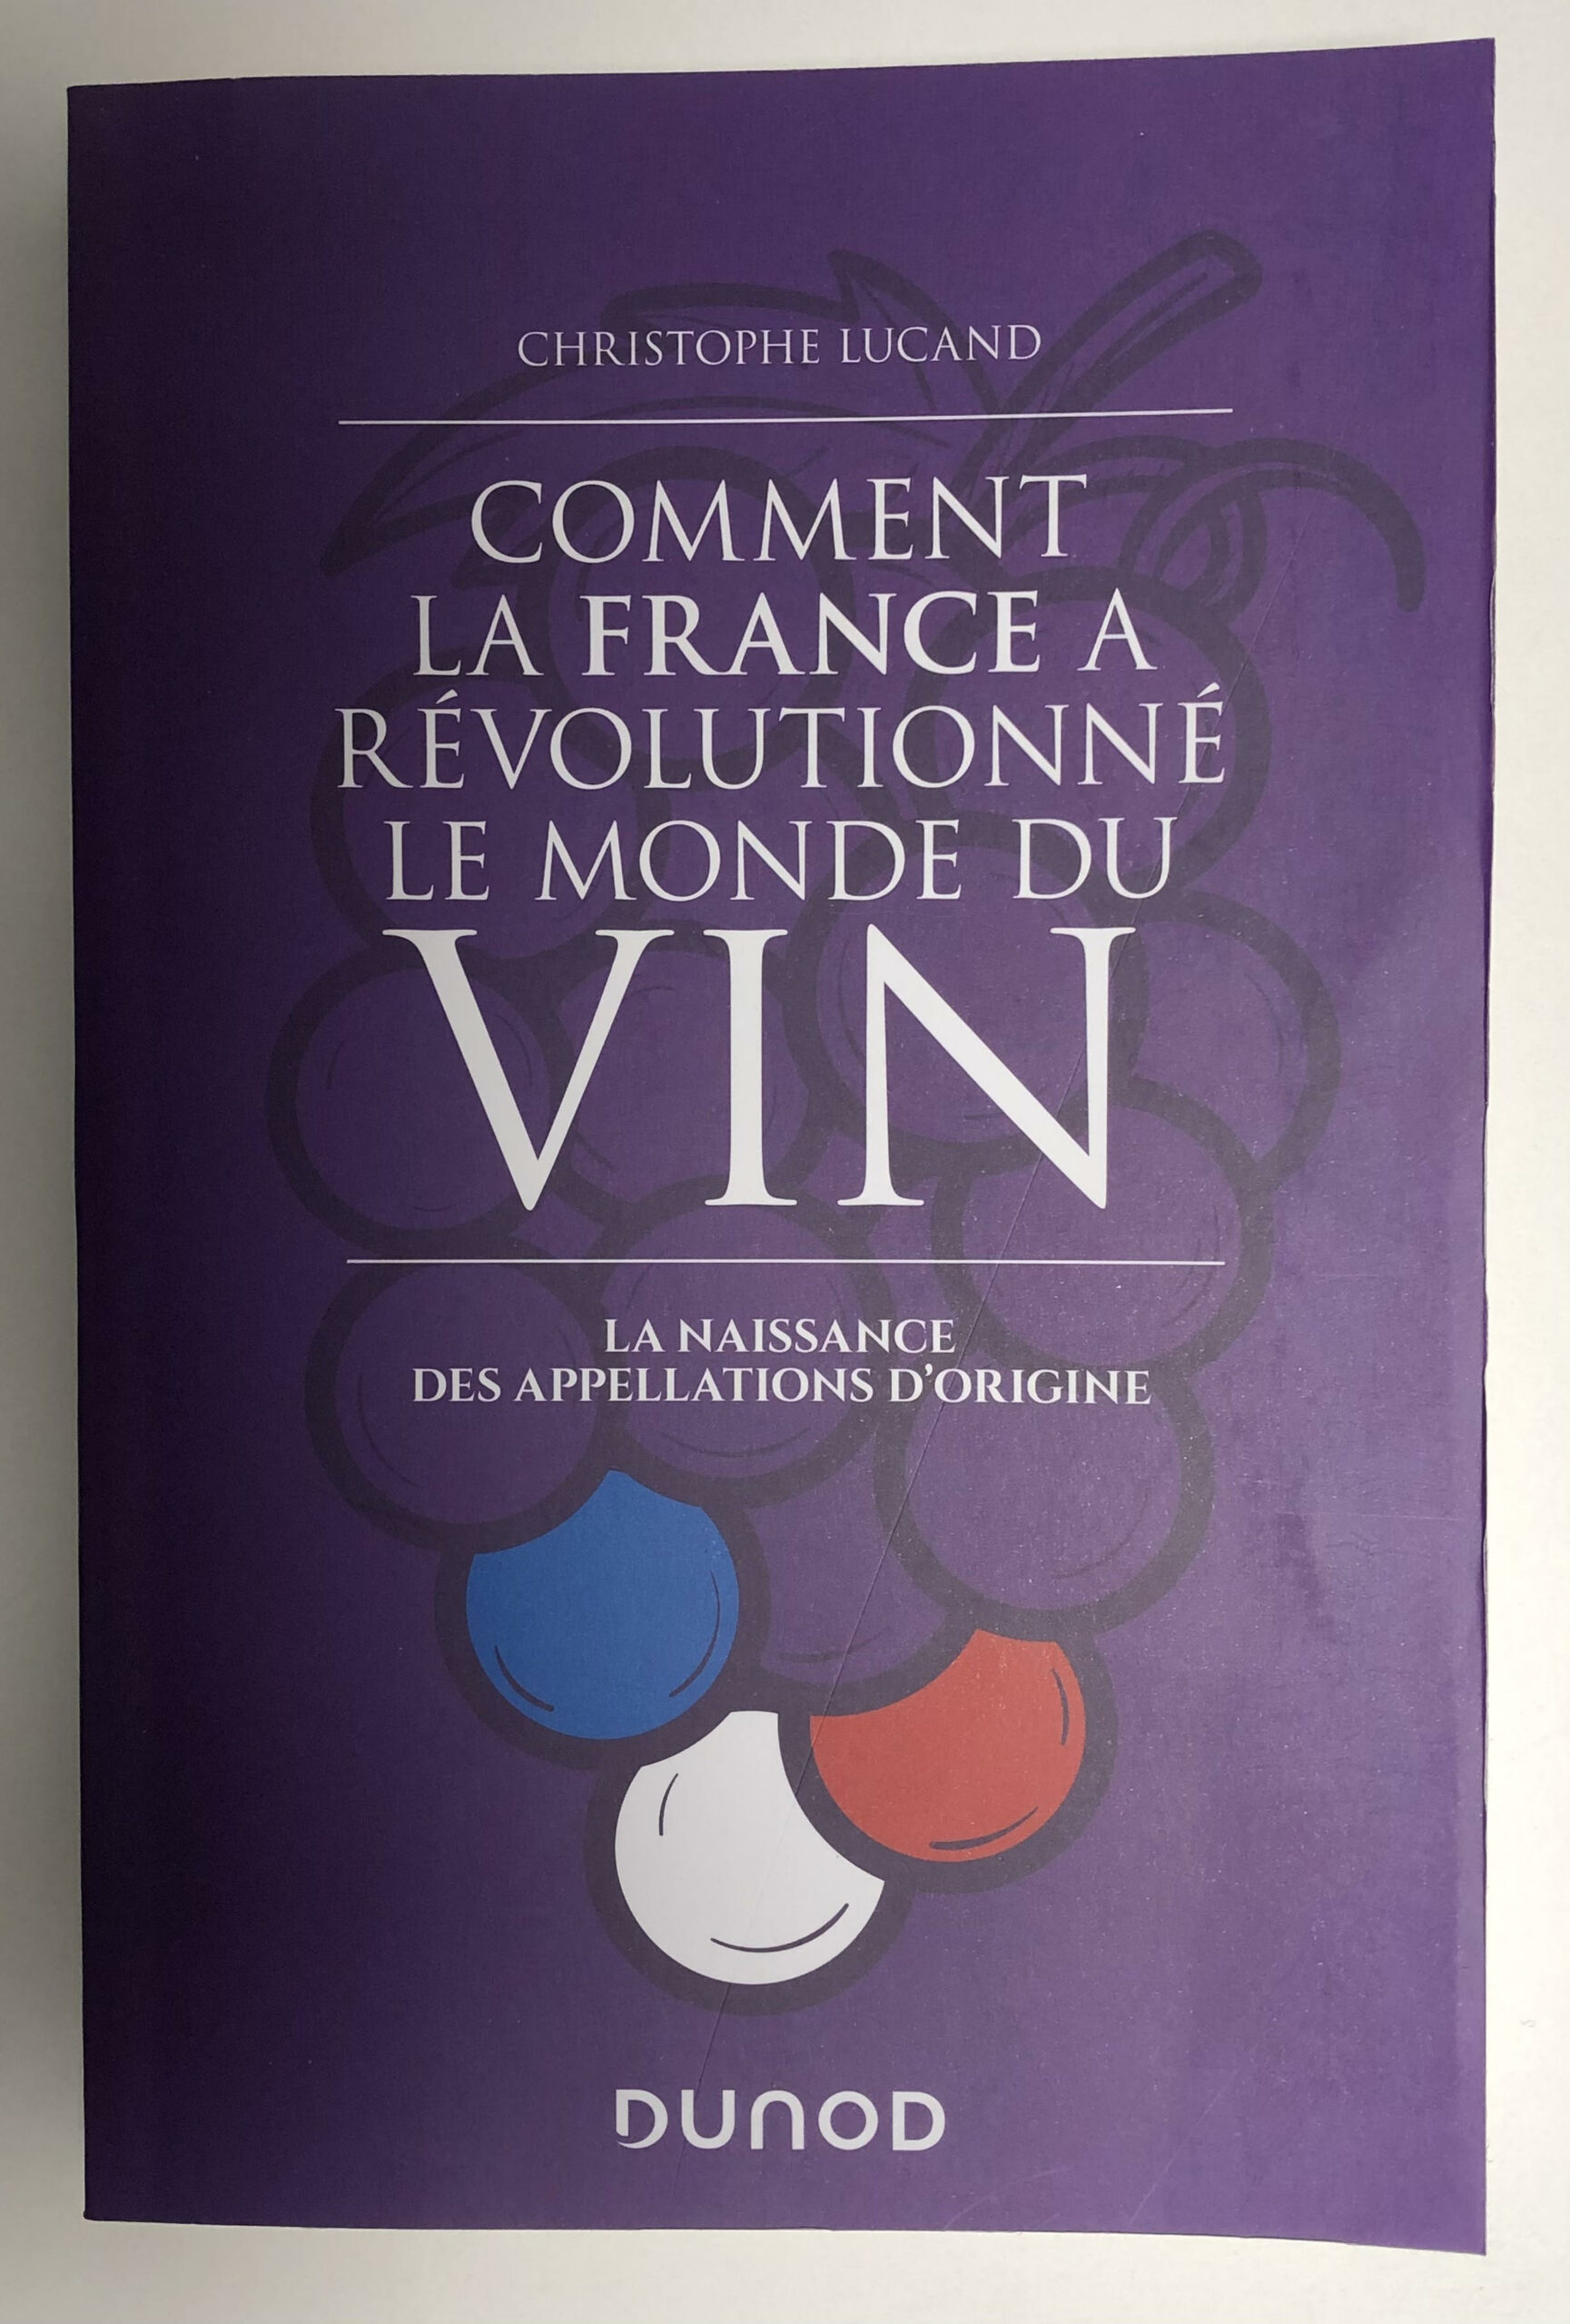 Livre “Comment la France a révolutionné le monde du vin” de Christophe Lucand